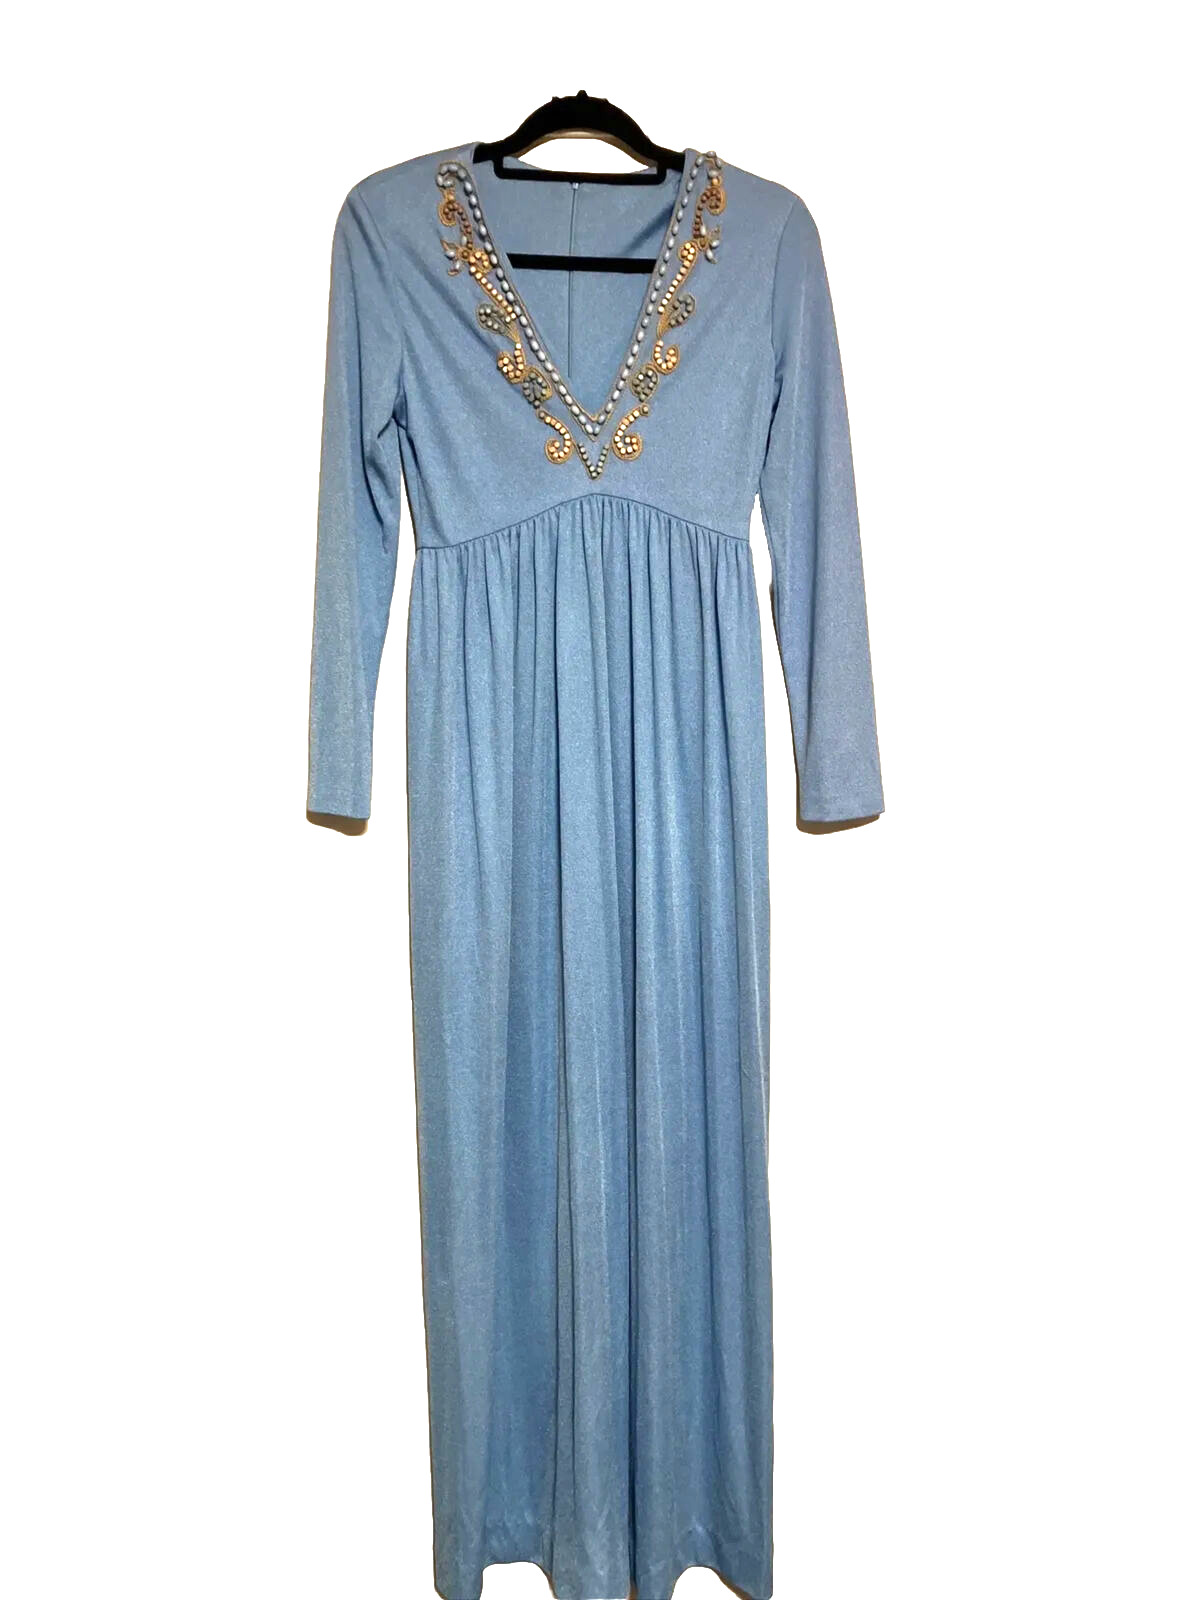 VTG HIPPIE Fabulous 70s Shimmer Powder Blue Art Beaded Long Slv Maxi Dress S-M